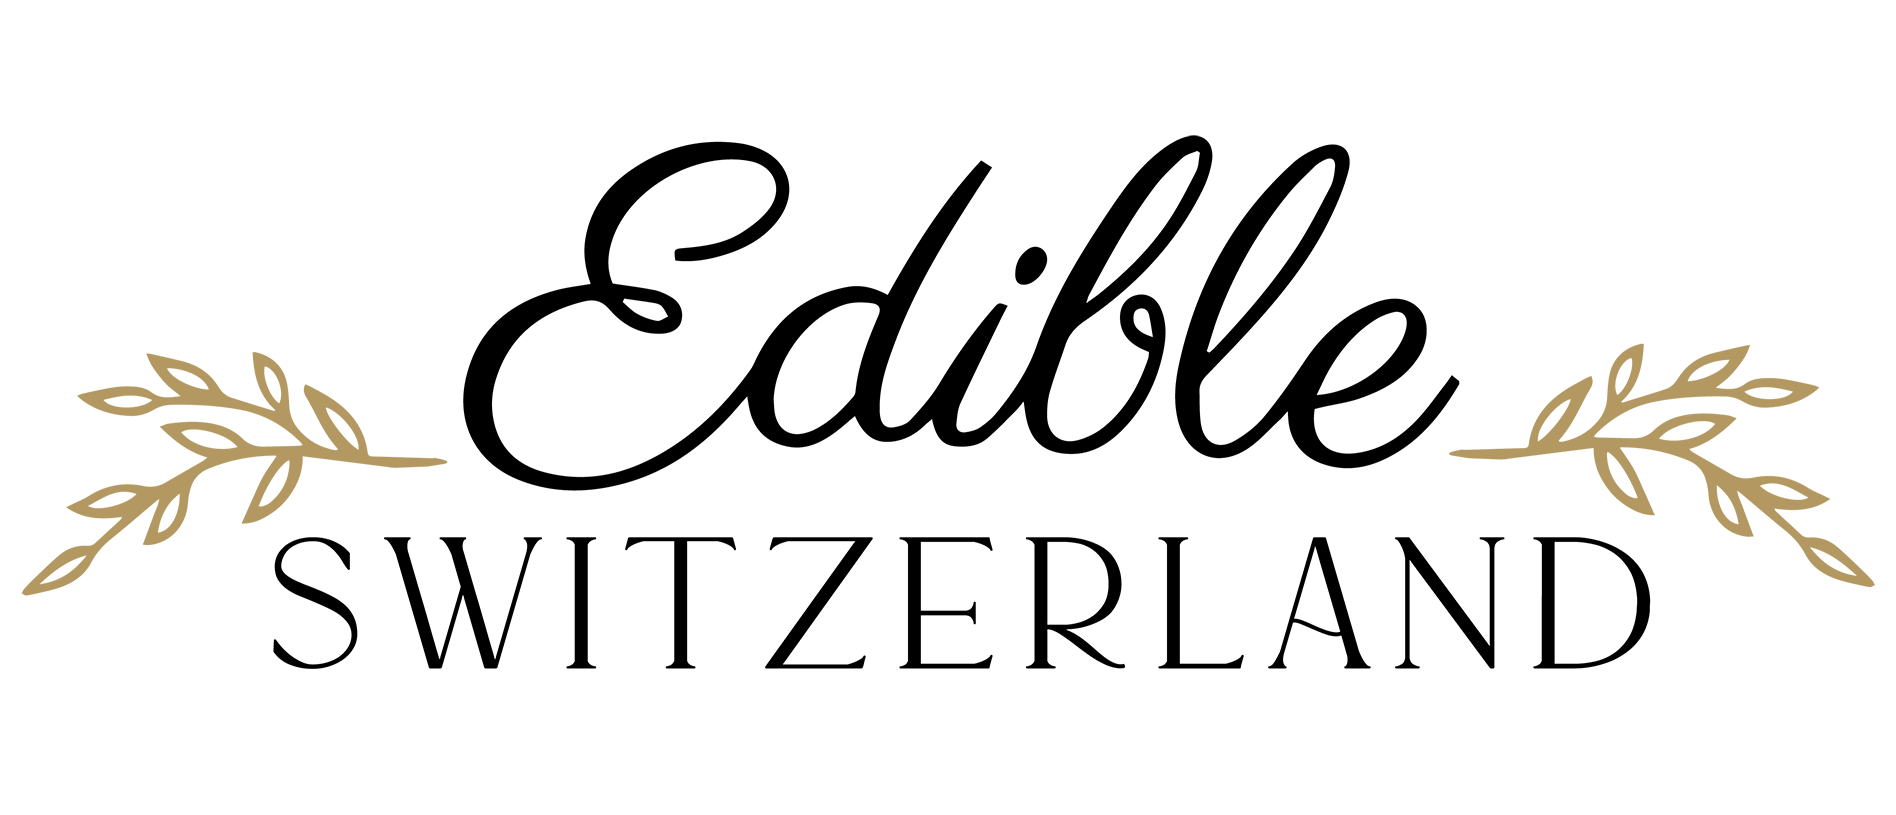 EdibleSwitzerland logo stacked